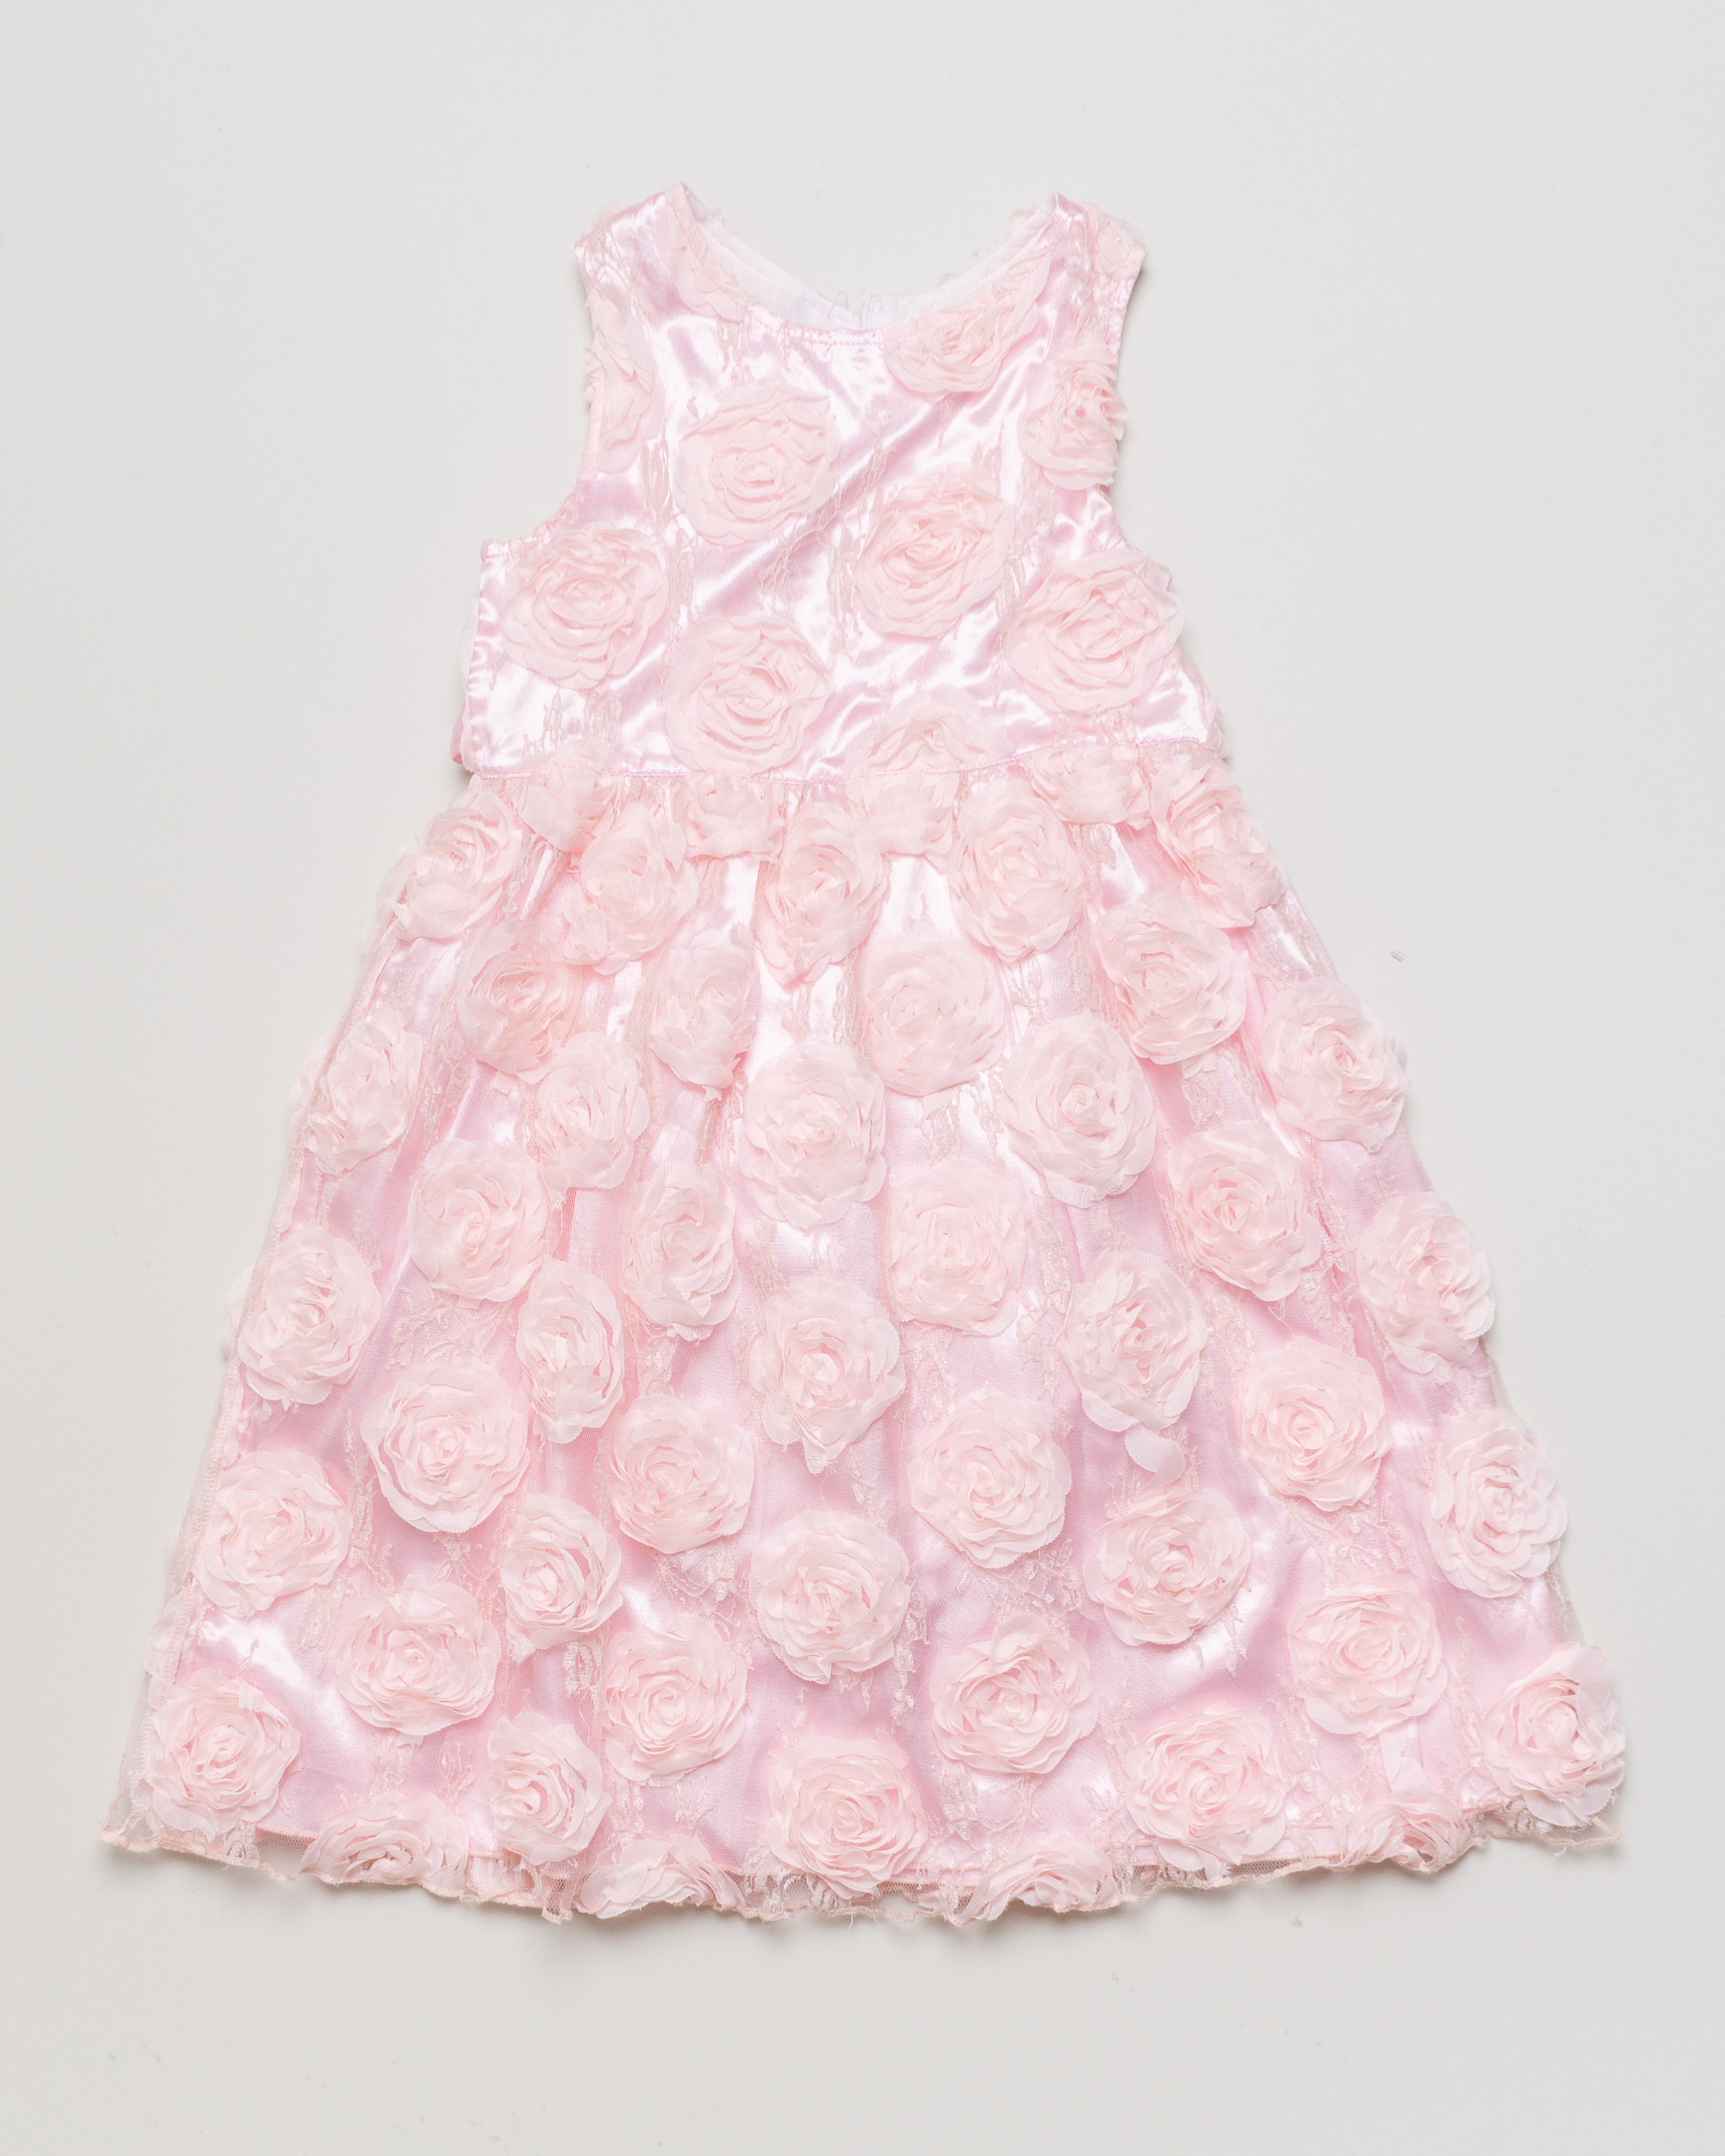 1 Kleid Gr. 122-134 – rosa Rosen Blumen Satin Festlich 